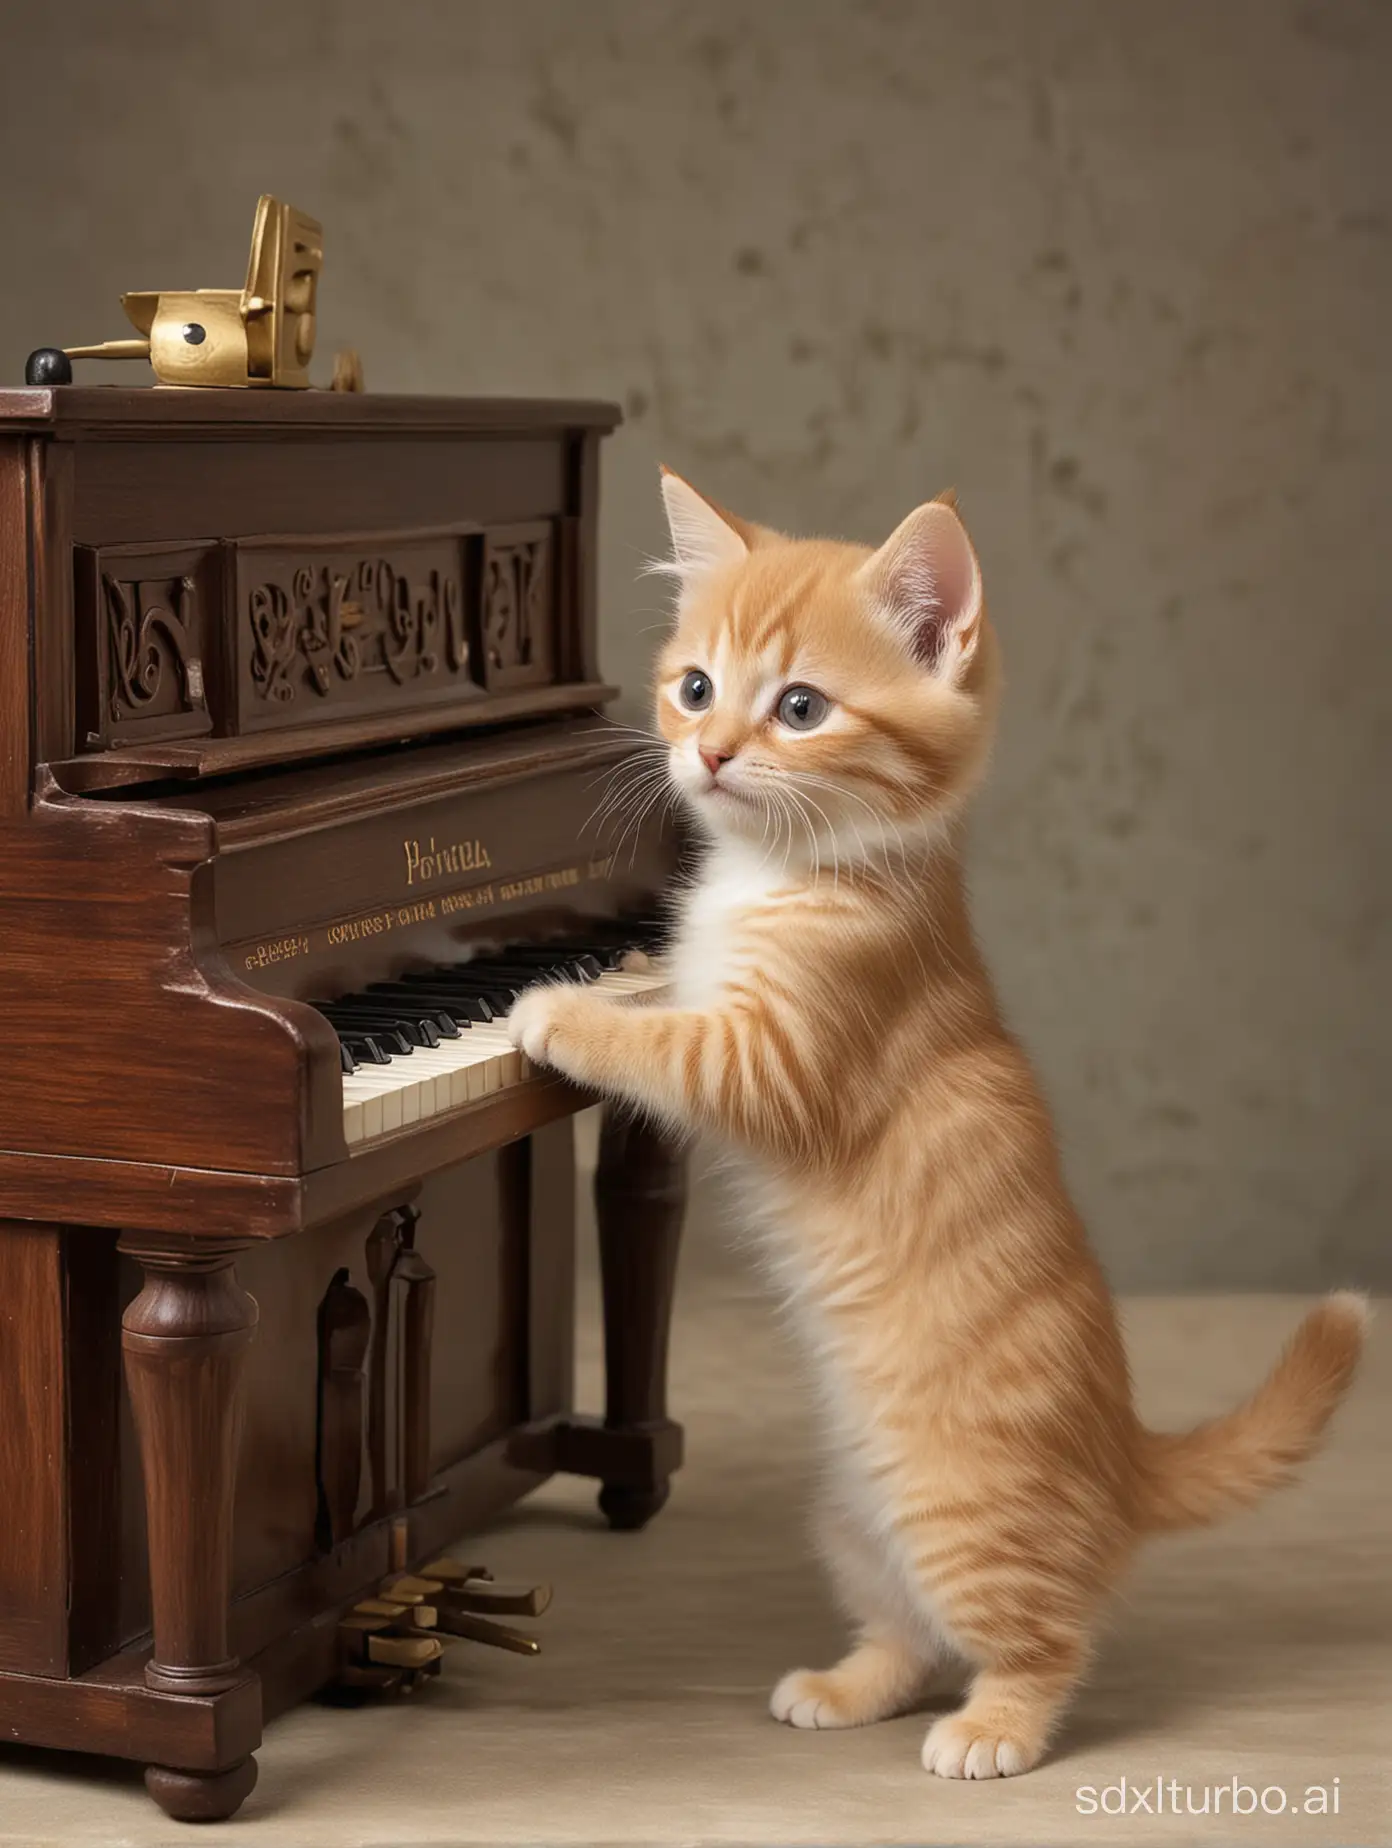 ANTHROPOMORPHIC KITTEN playing piano